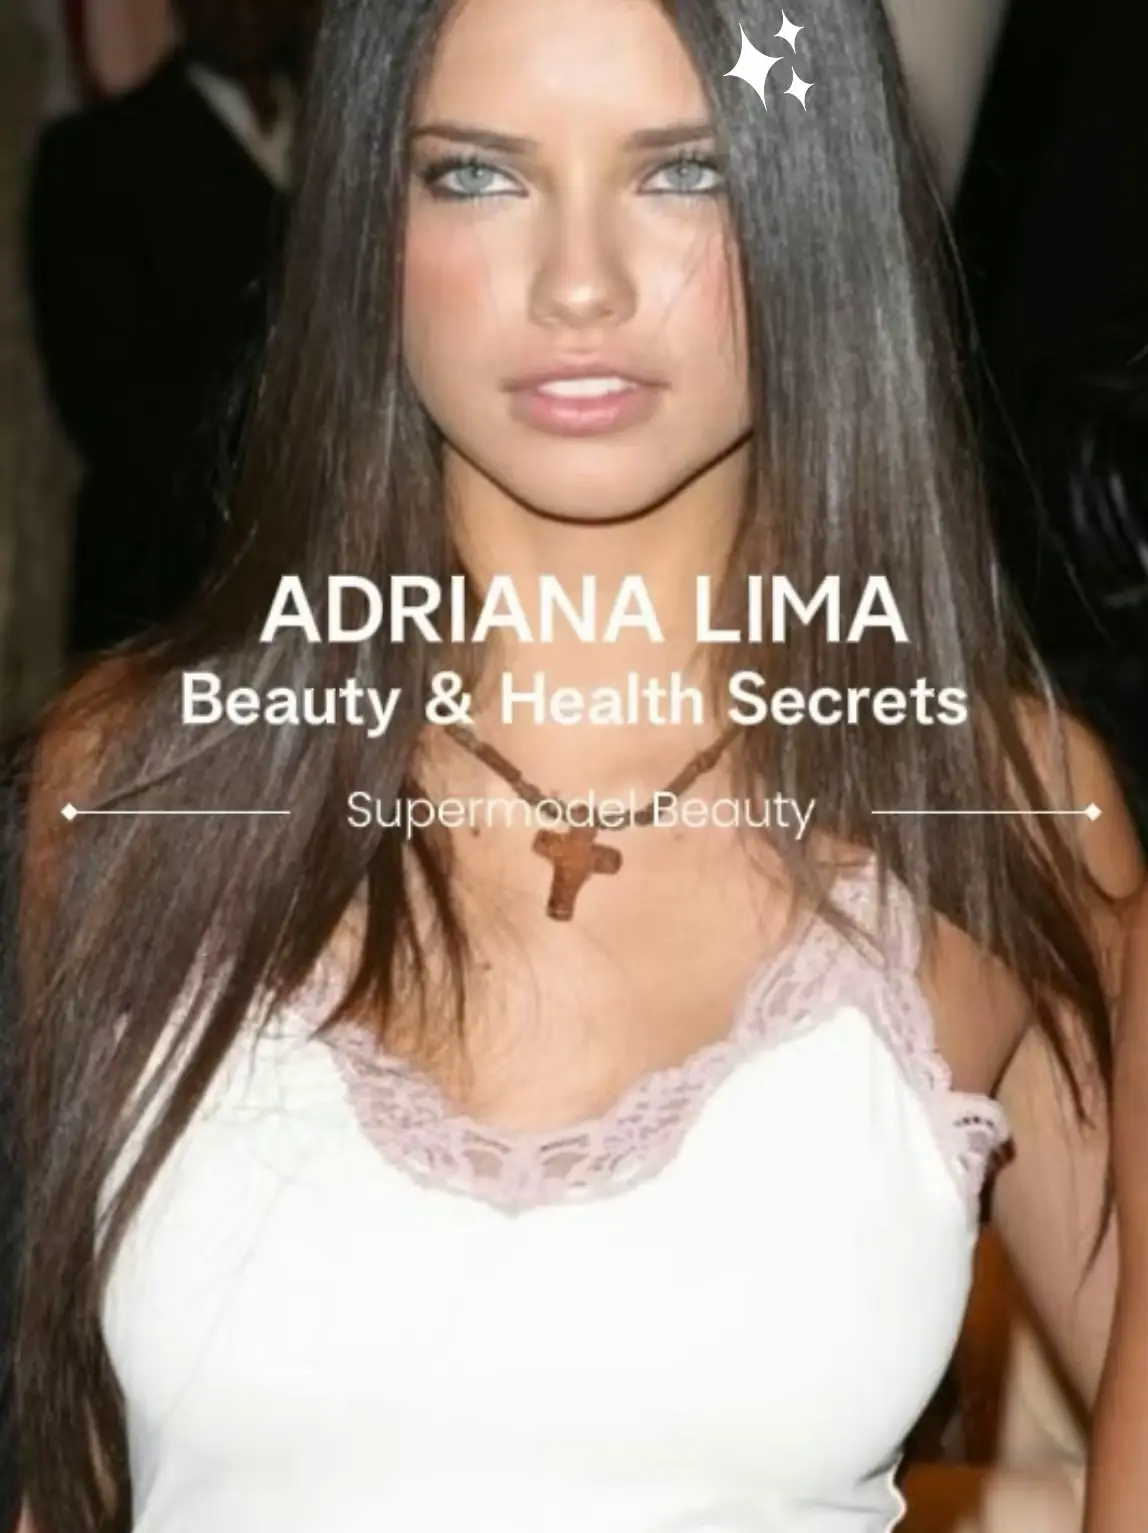 Adriana Lima Porn - Adriana Lima Beauty and Health Secrets - Lemon8 Search